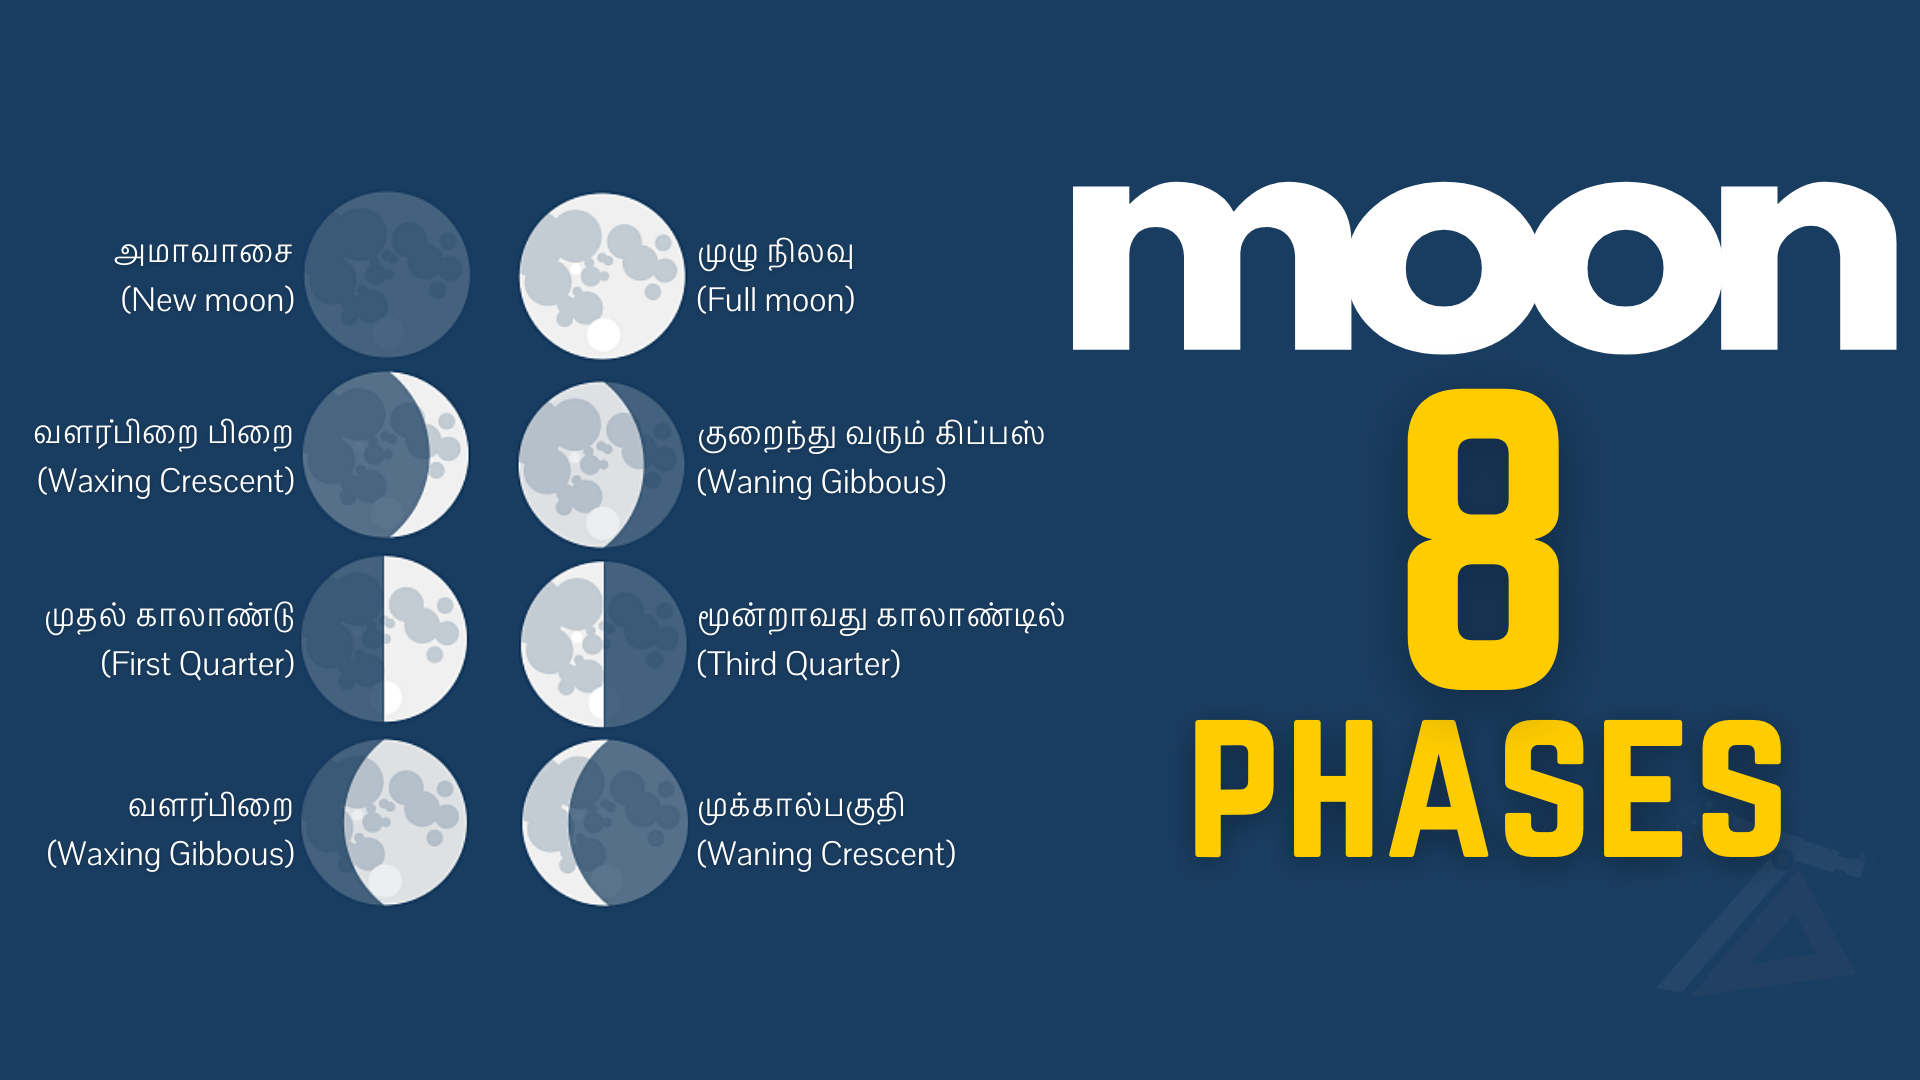 The Moon has 8 major phases - சந்திரன் 8 முக்கிய கட்டங்களைக் கொண்டுள்ளது